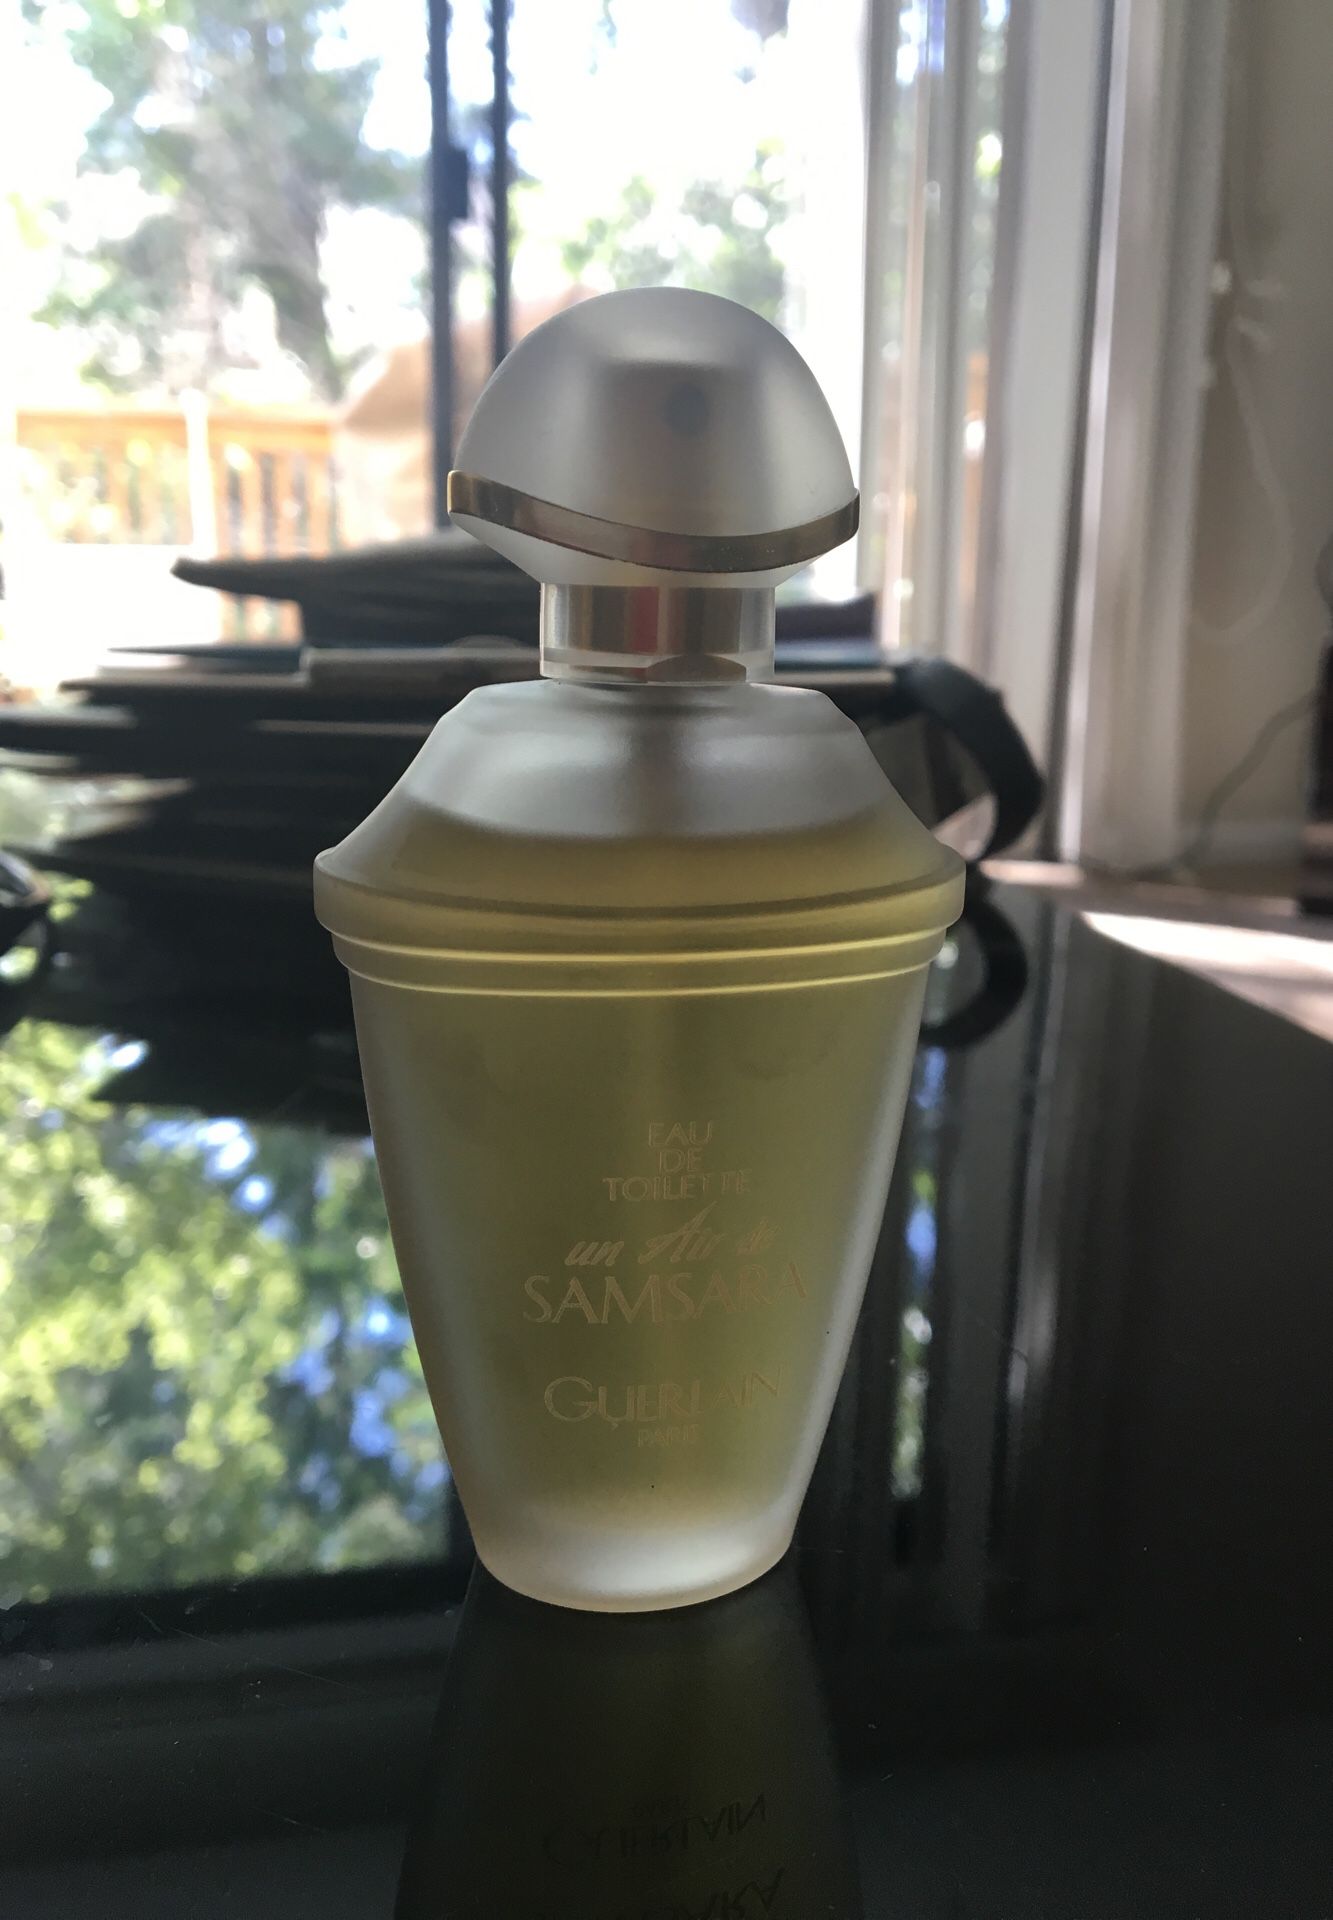 Un air de Samsara perfume 1.7fl oz